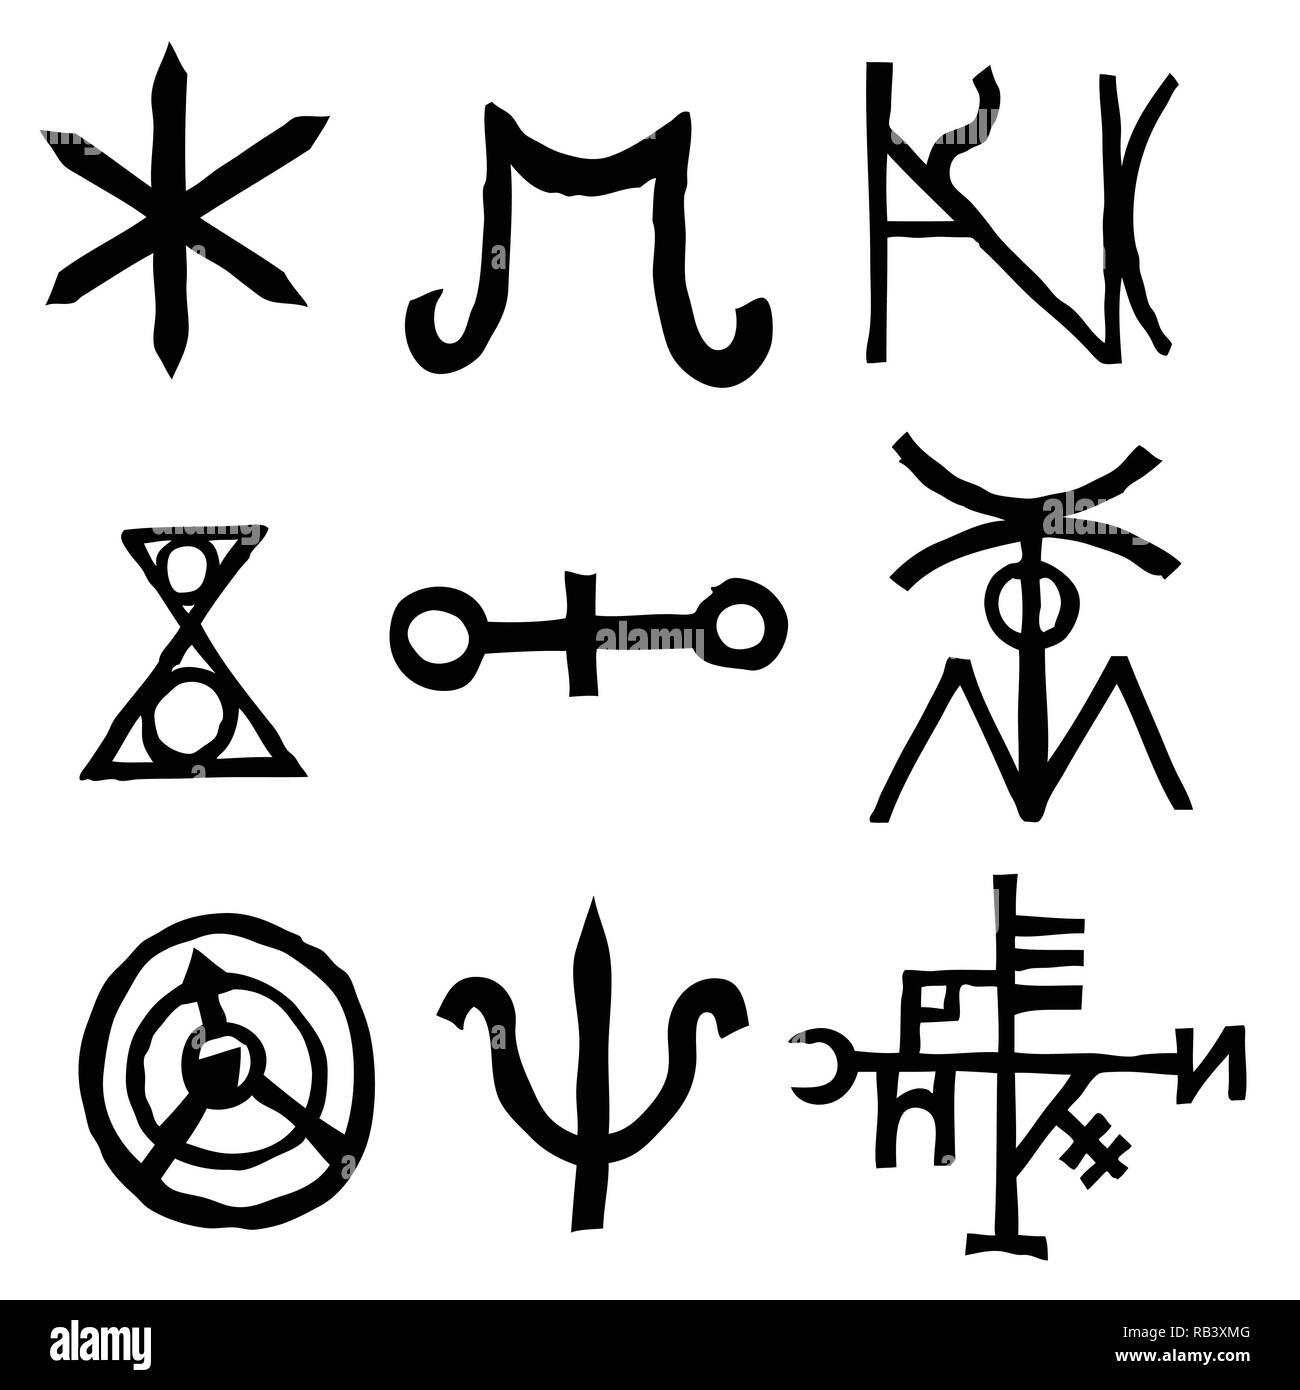 Ensemble de symboles et de lettres inspiré par des symboles et inscriptions magique isolé sur fond. Manuscrit ancien alphabet. Vecteur. Illustration de Vecteur